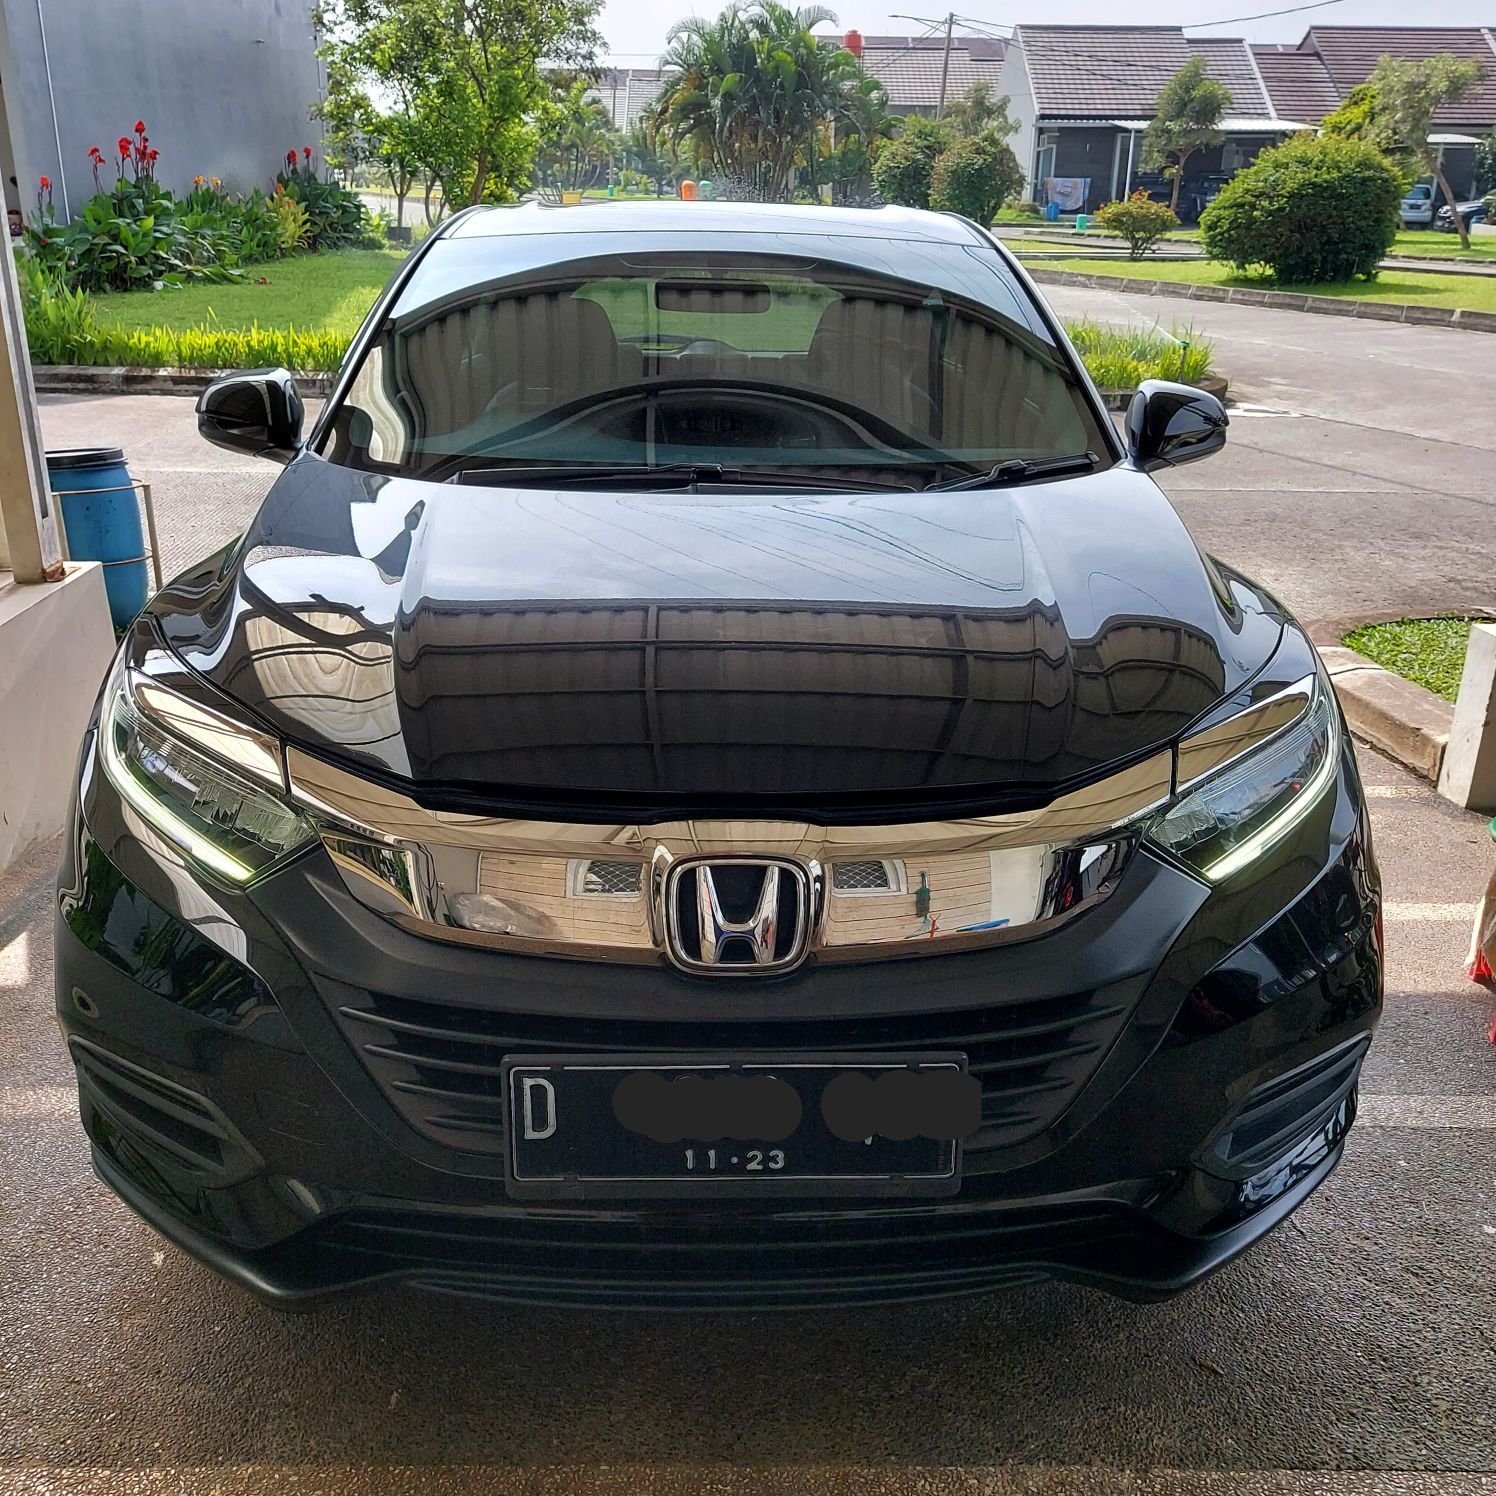 2018 Honda HRV Bekas